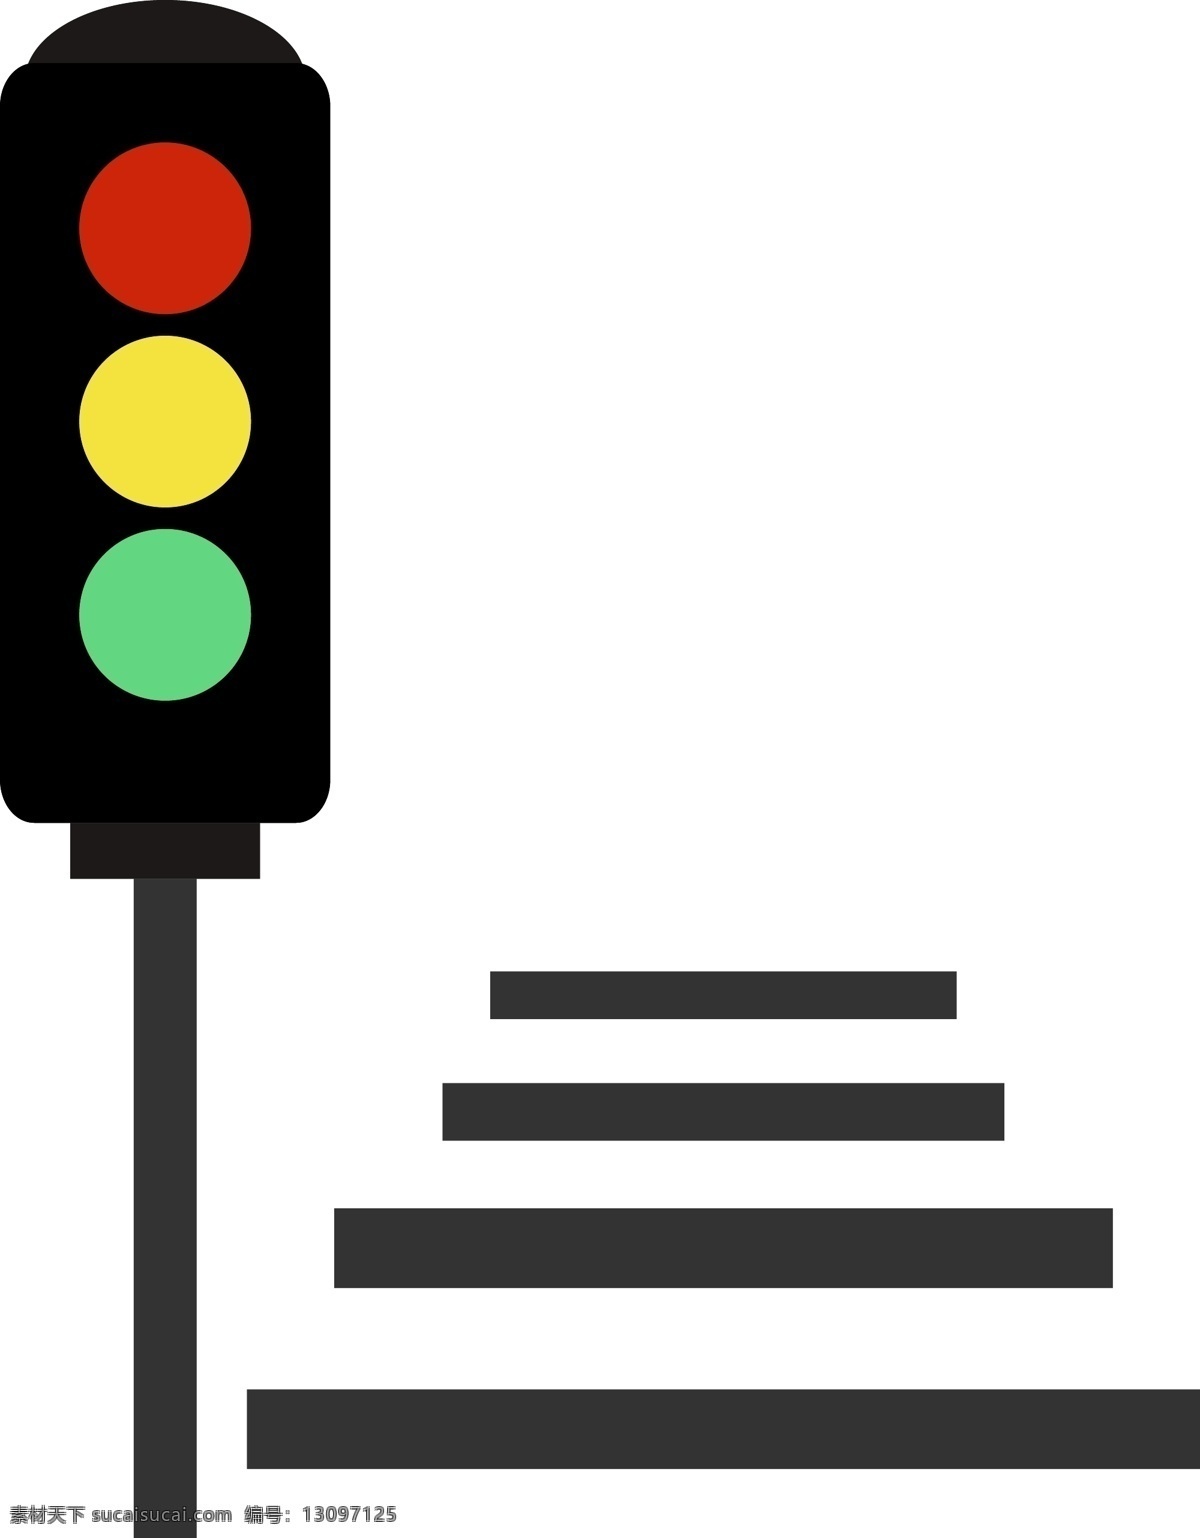 矢量 交通信号灯 斑马线 红路灯 过马路 交通规则 闯红灯 安全驾驶 行人 减速慢行